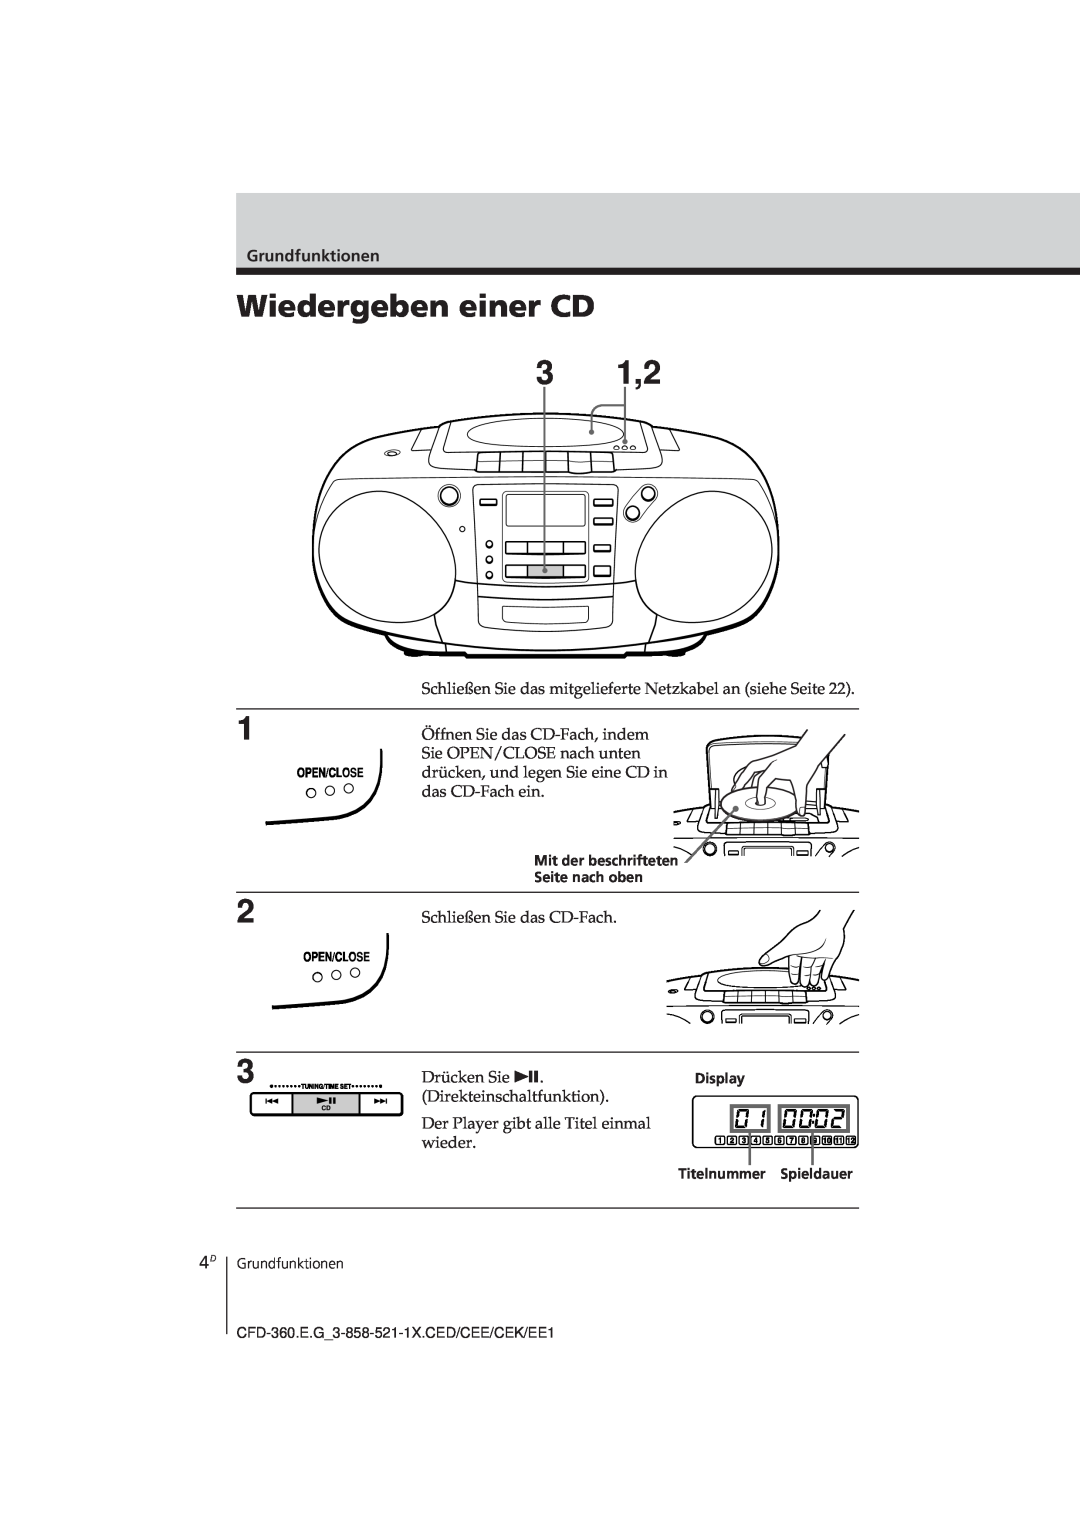 Sony CFD-360 operating instructions Wiedergeben einer CD, 3 1,2 